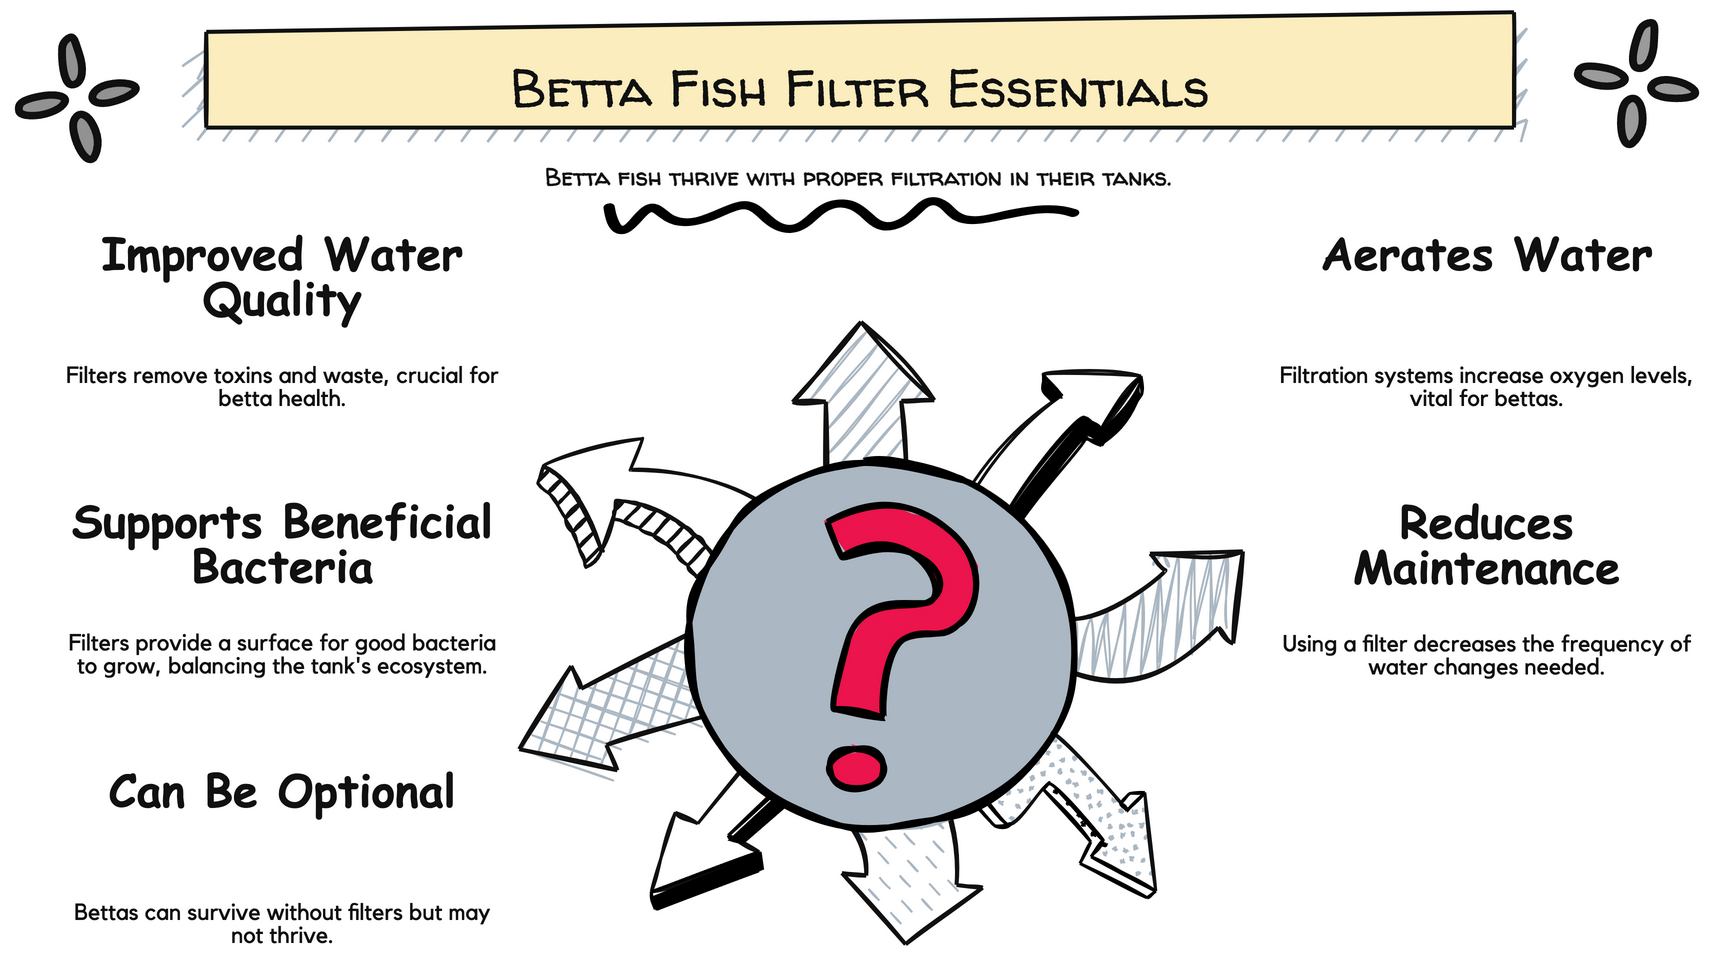 Peștele Betta are nevoie de un filtru